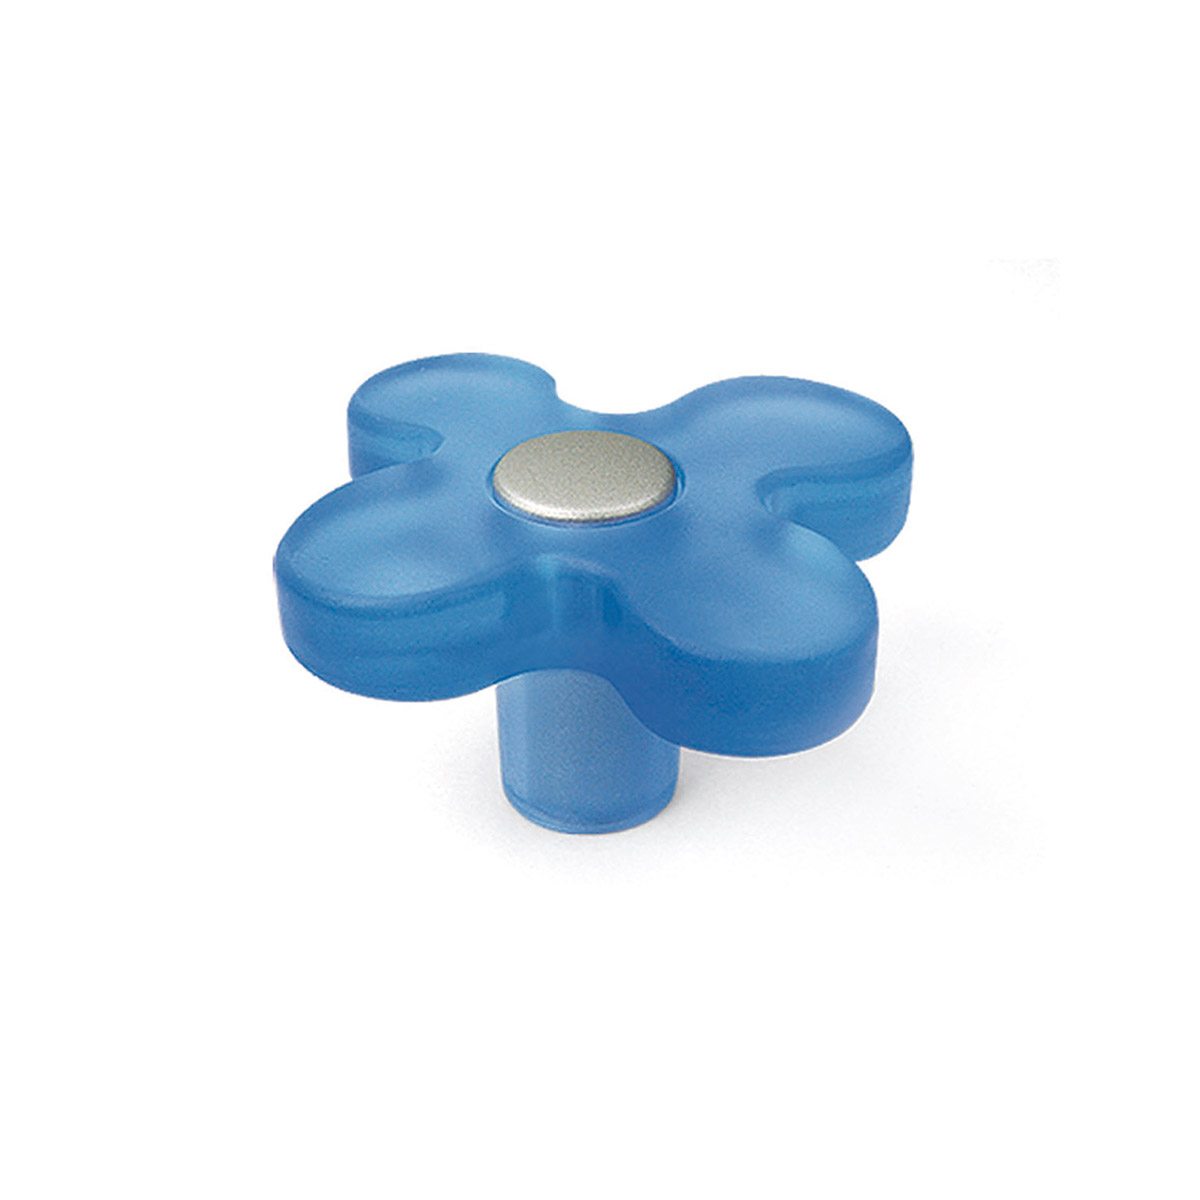 Blister avec 6 boutons en plastique avec finition bleue, dimensions: 49x49x26mm ø: 49mm